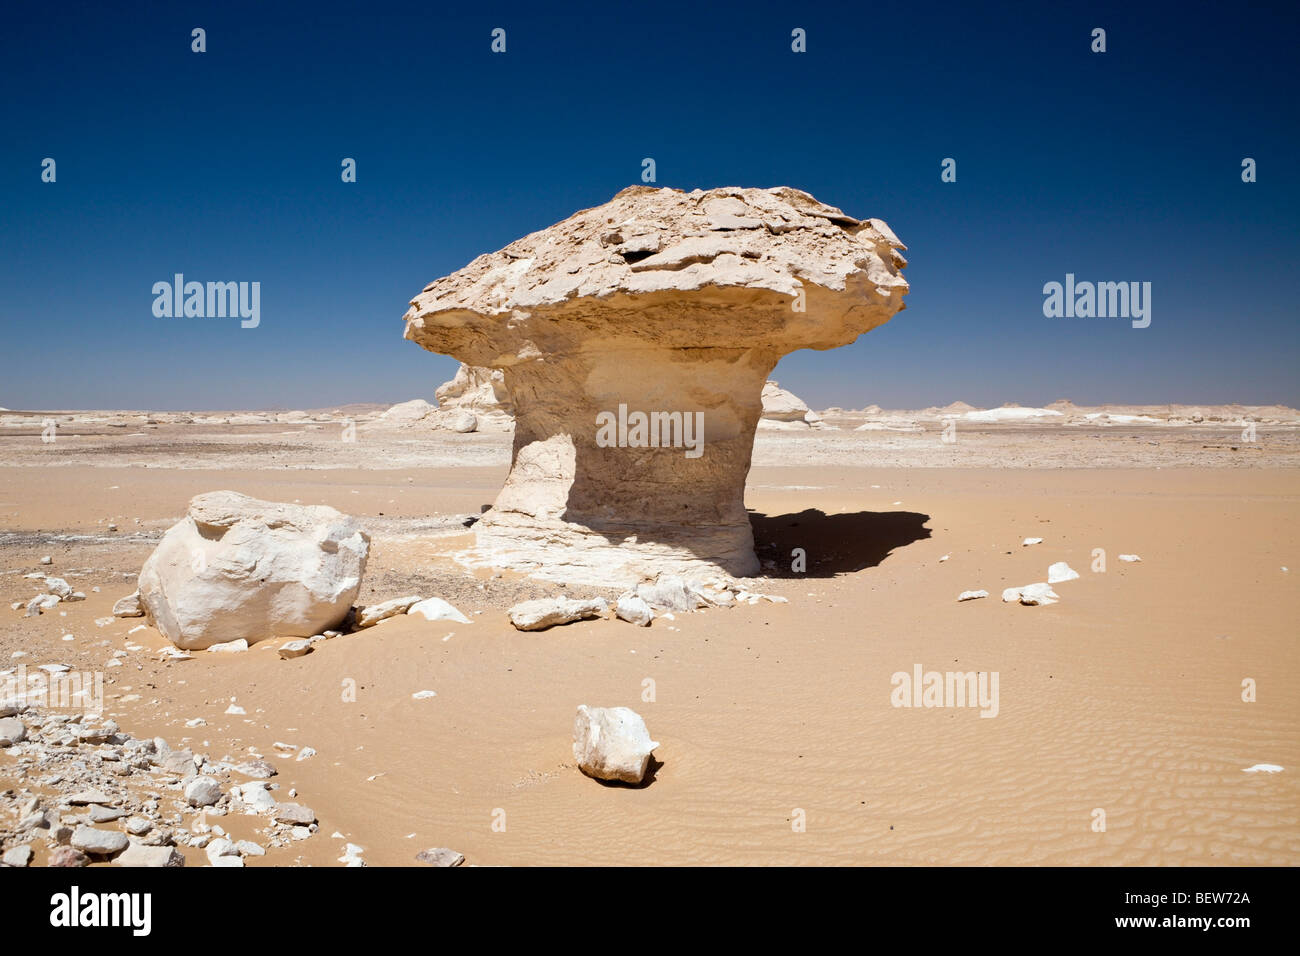 Le Parc National du désert blanc, Désert de Libye, Egypte Banque D'Images